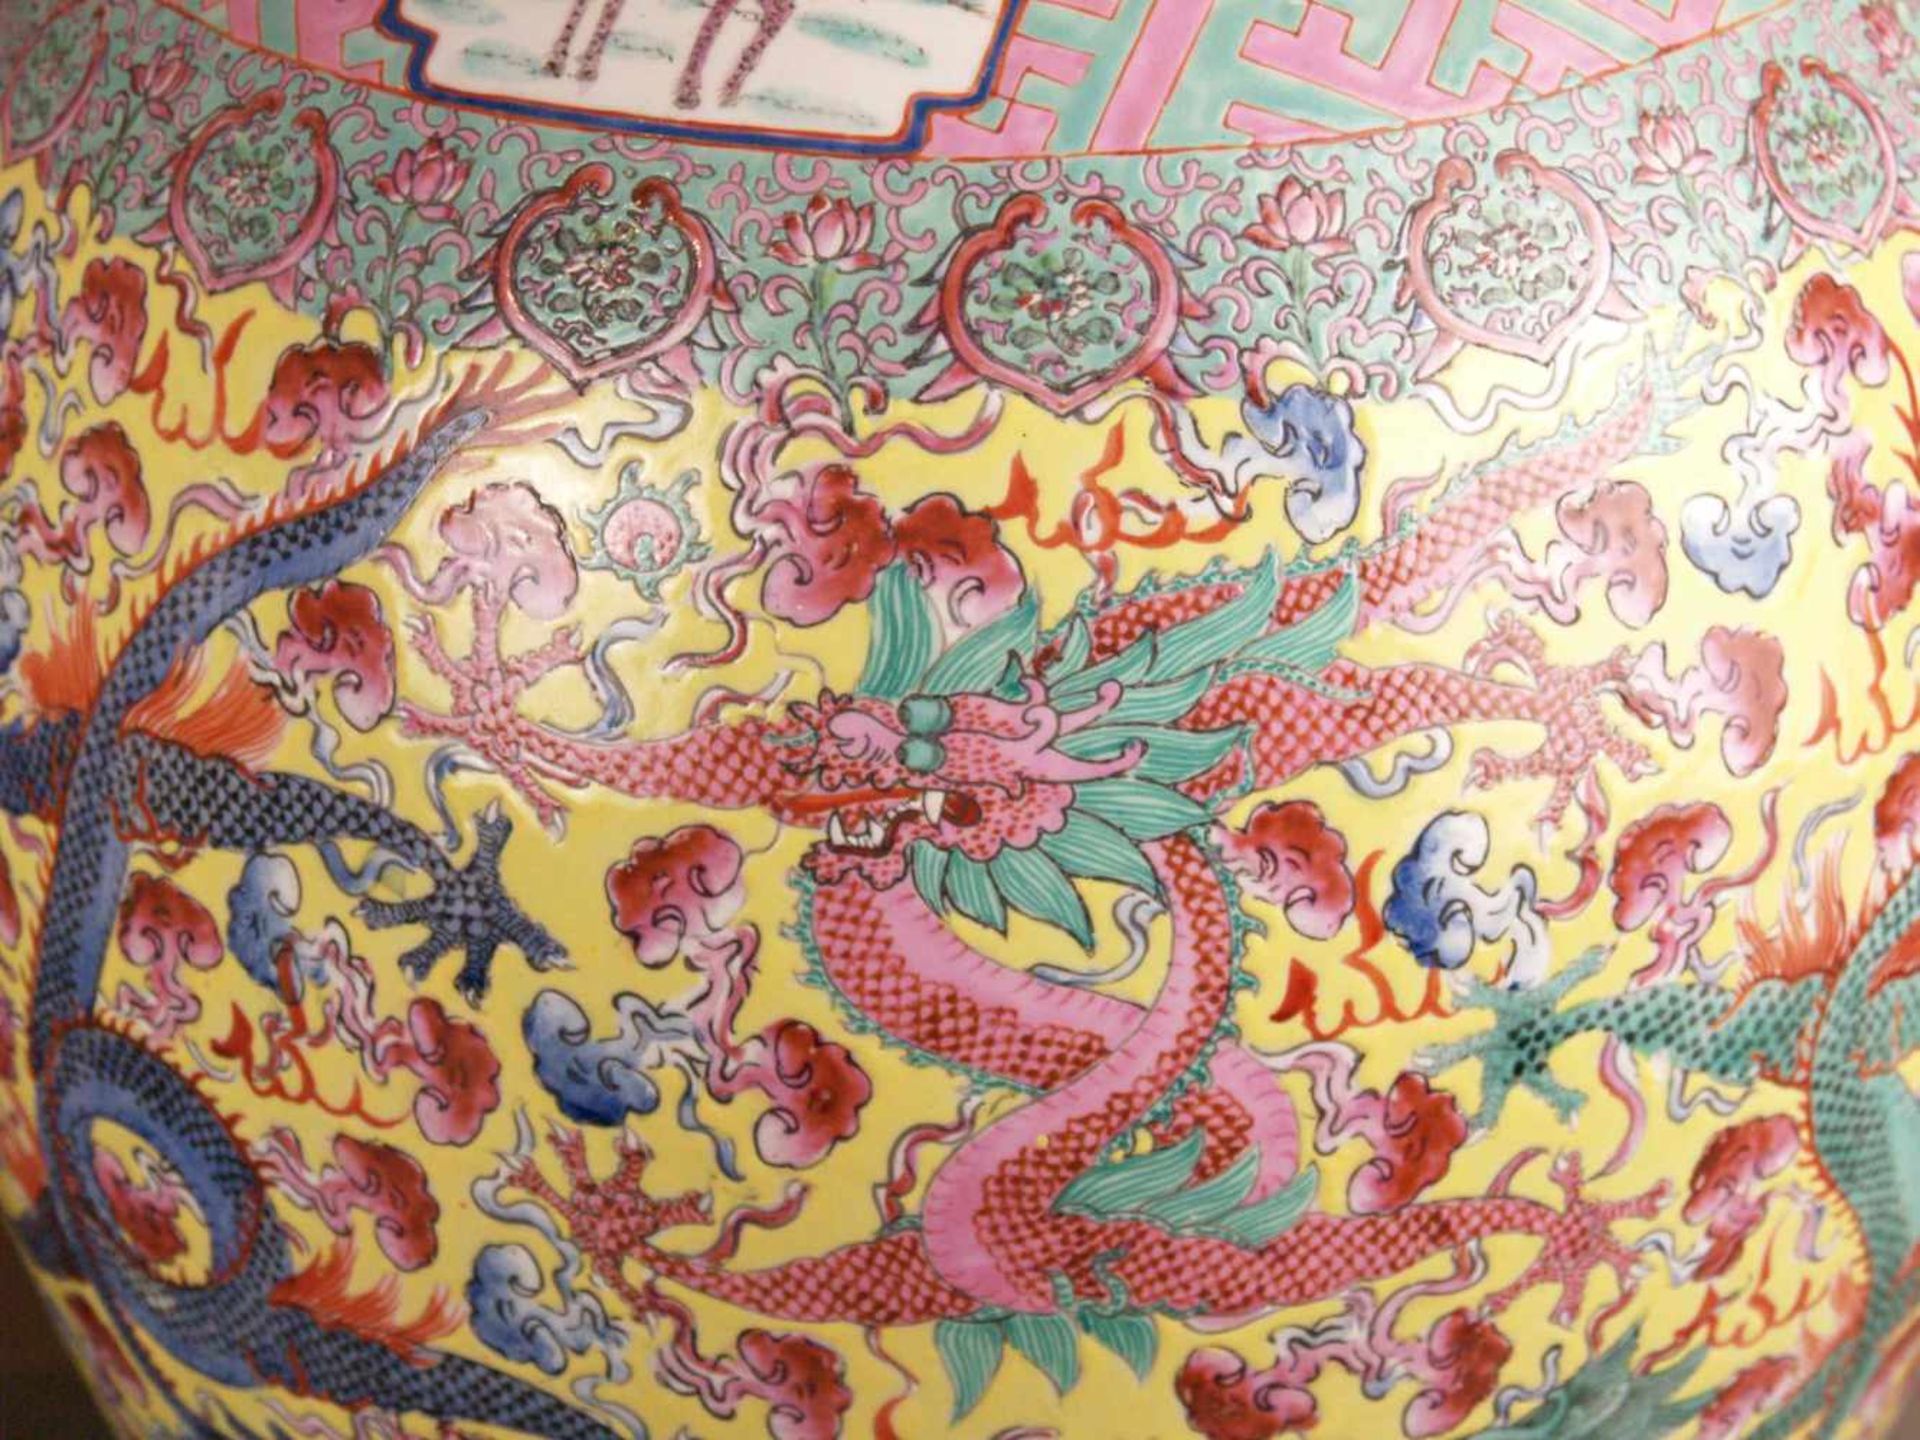 Paar Bodenvasen - China 20.Jh.,Tian qiu ping-Typus, üppiger Dekor in polychromen Emailfarben, auf - Bild 9 aus 15